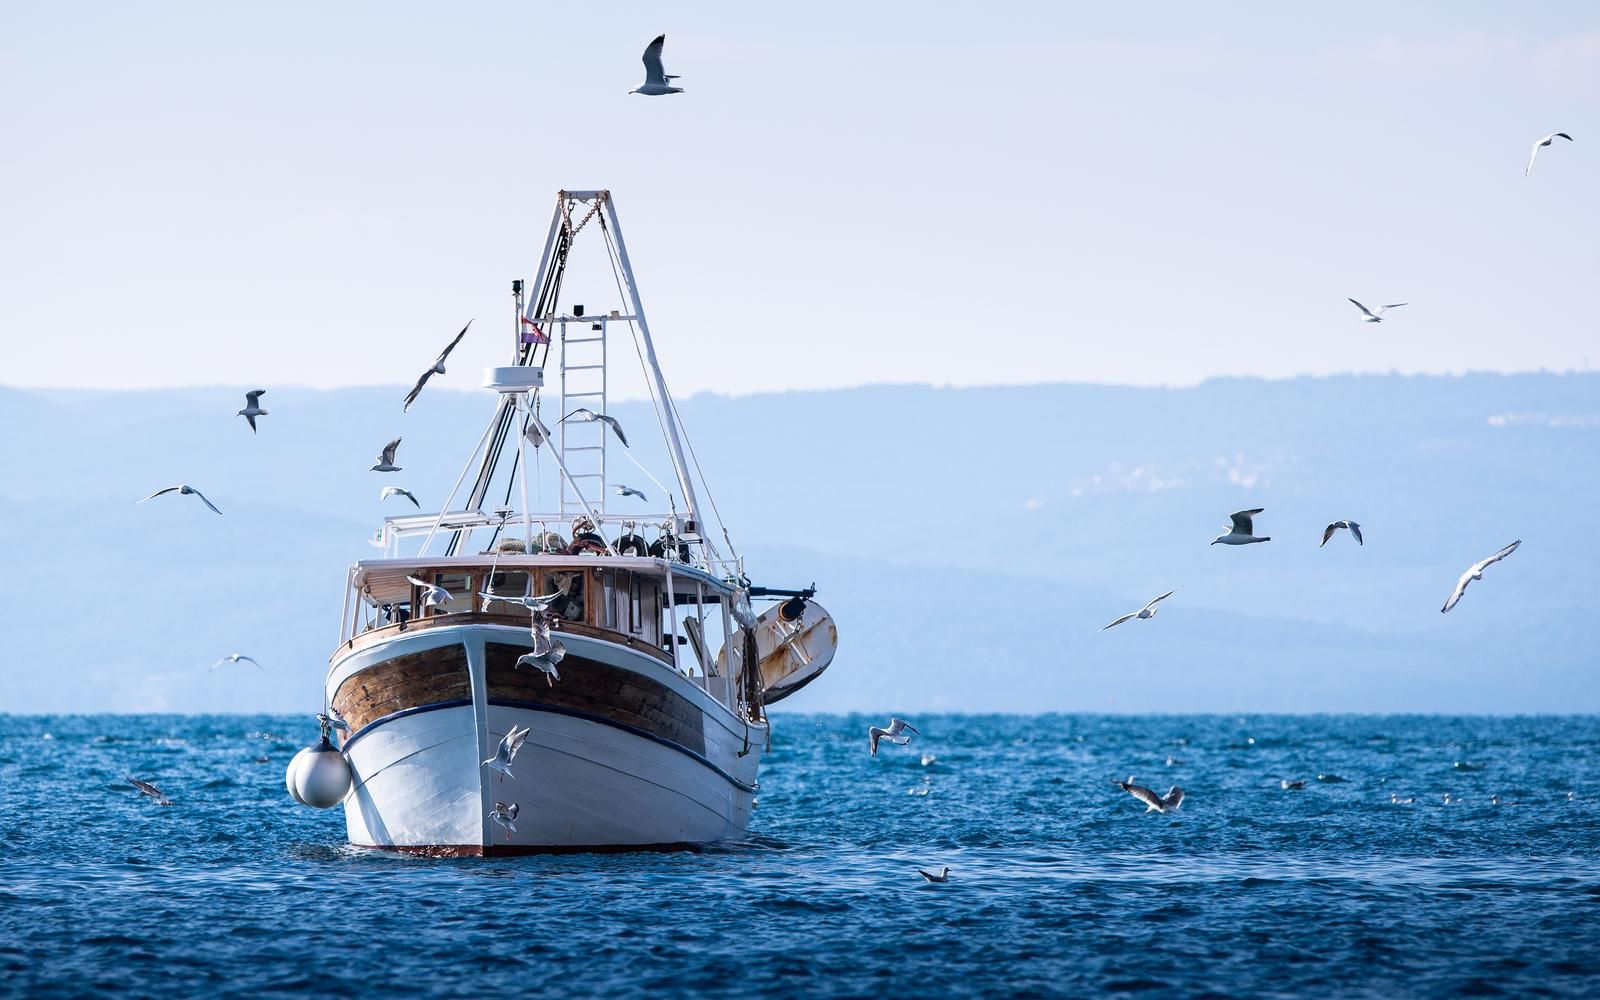 16.02.2021., Makarska - Galebovi okruzili ribarski brod koji uplovljava u makarsku luku."nPhoto: Milan Sabic/PIXSELL